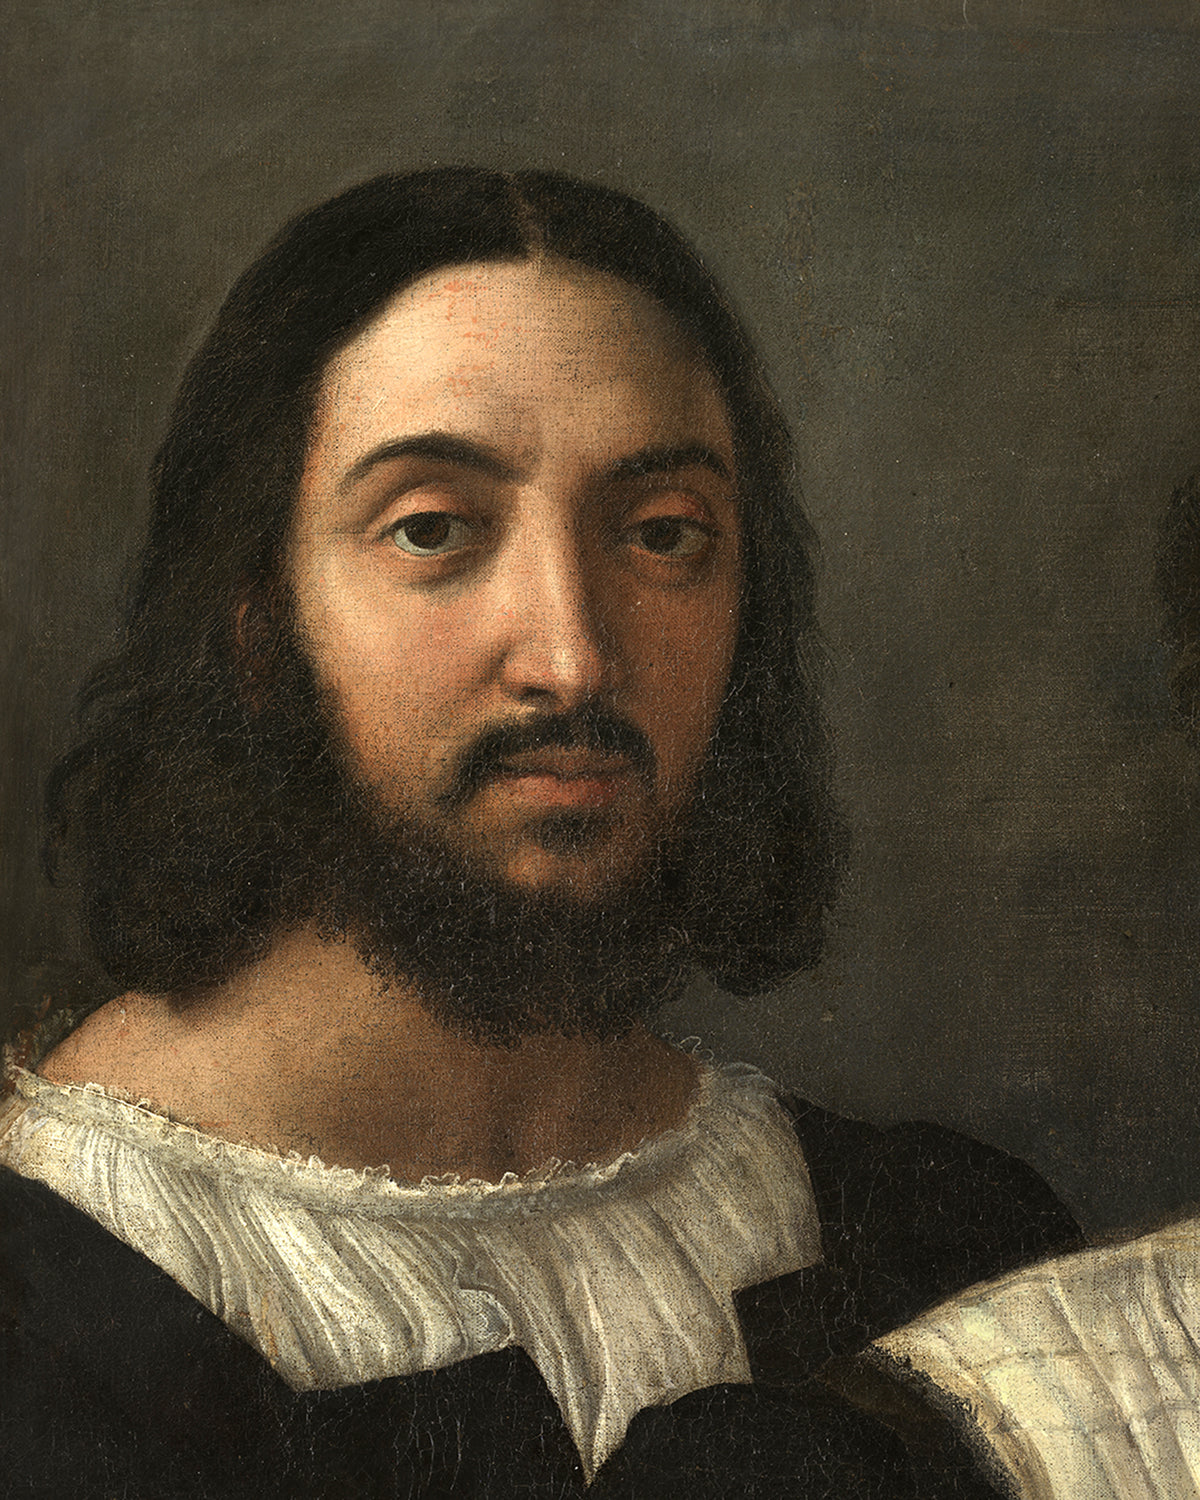 Self-Portrait with a Friend (Double Portrait)-Raphael